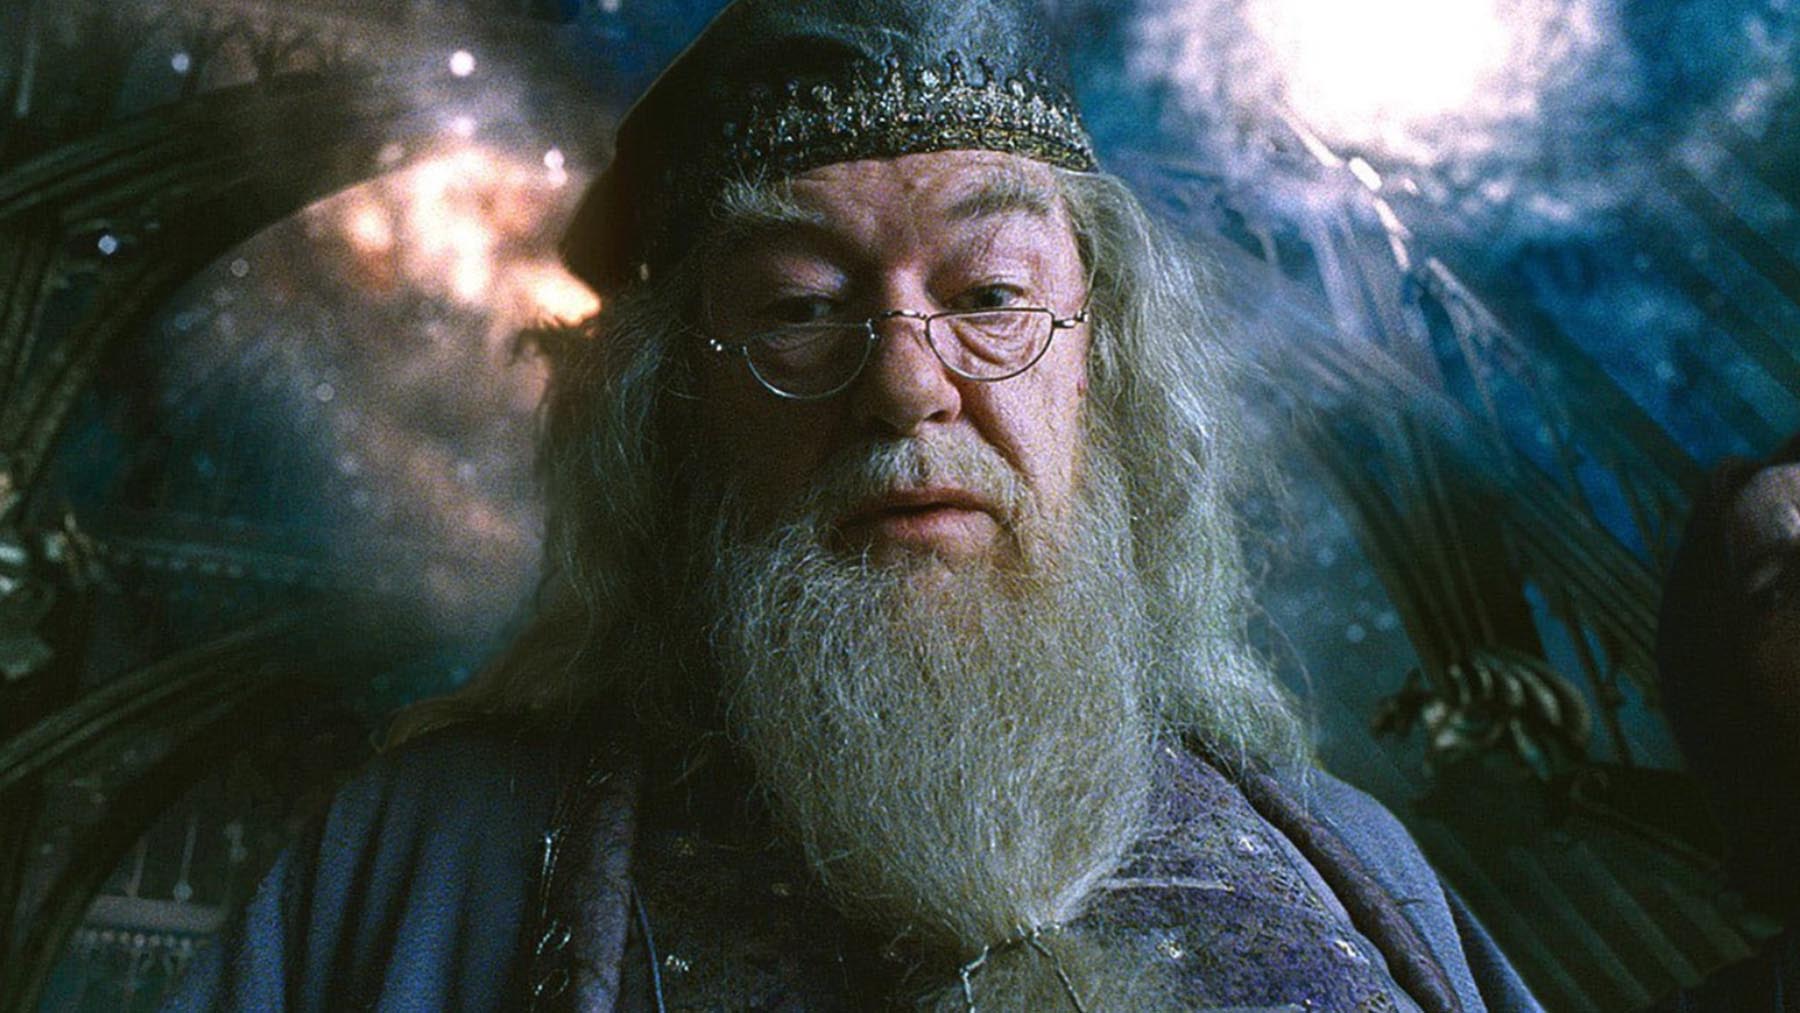 El reparto de ‘Harry Potter’ se despide de Michael Gambon (Dumbledore)